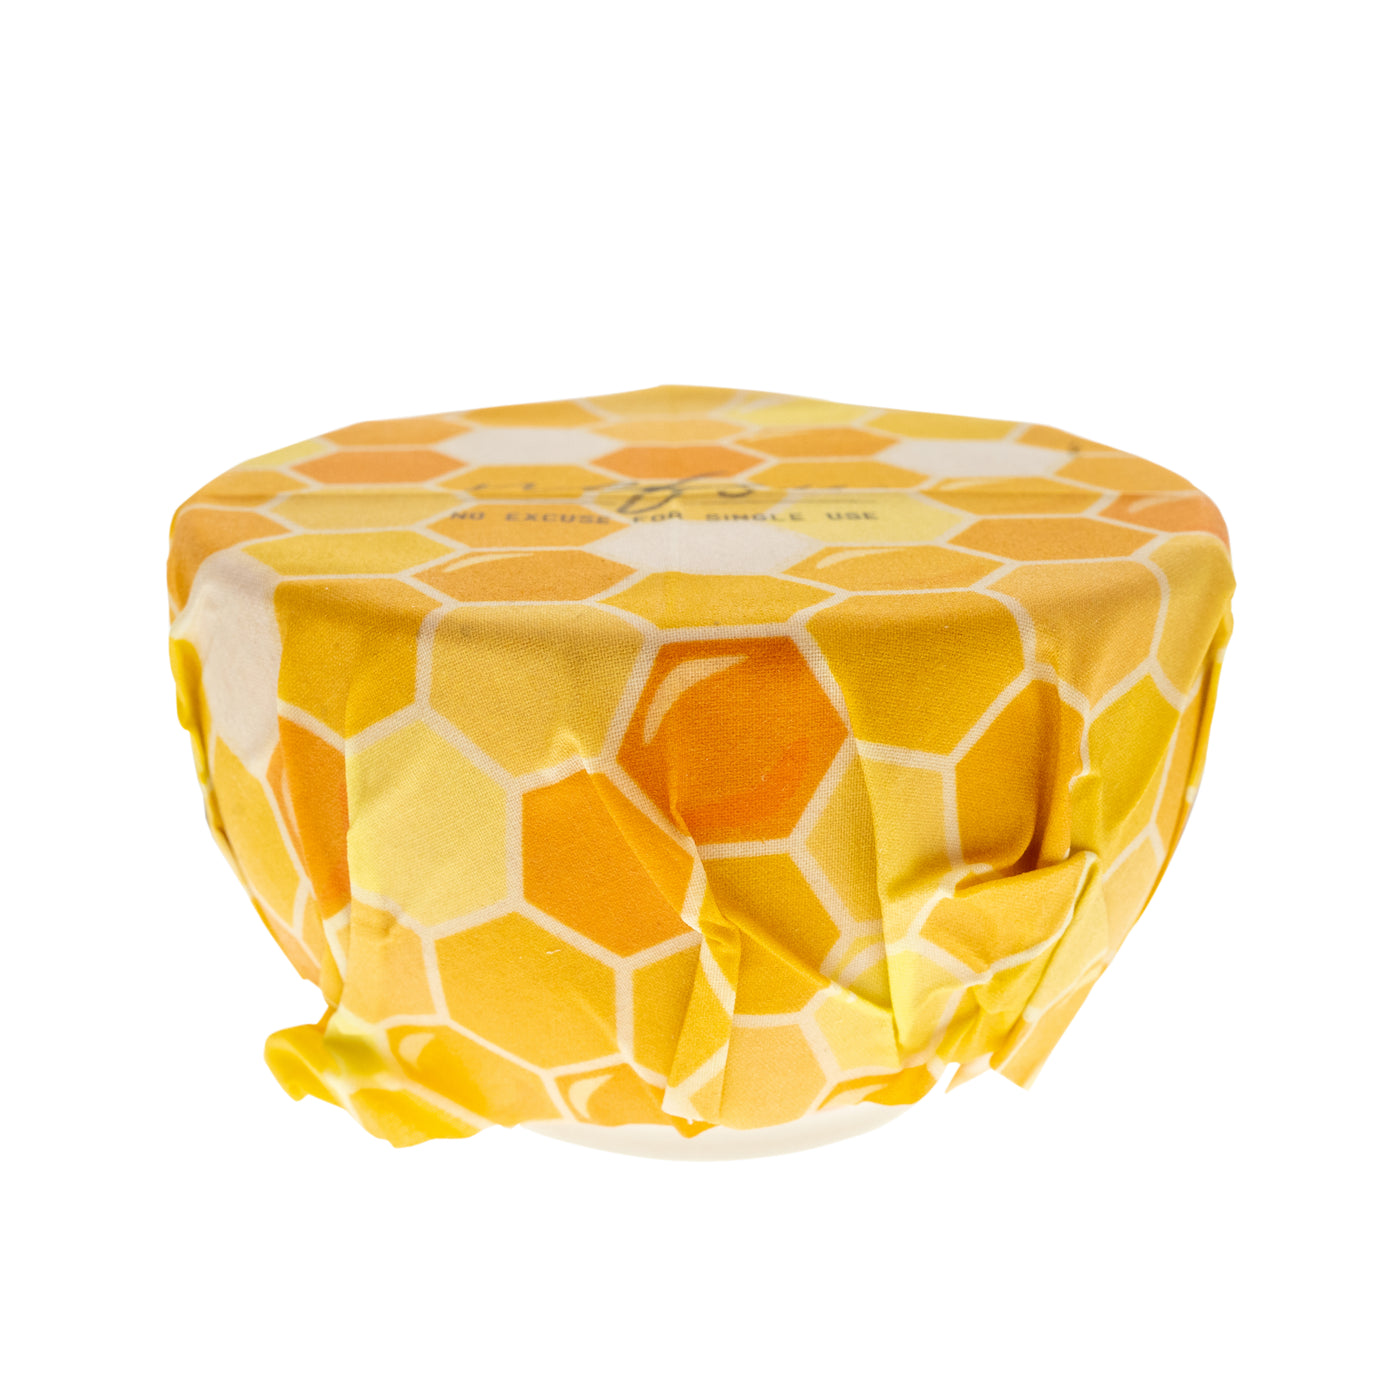 Bienenwachstuch - Honey